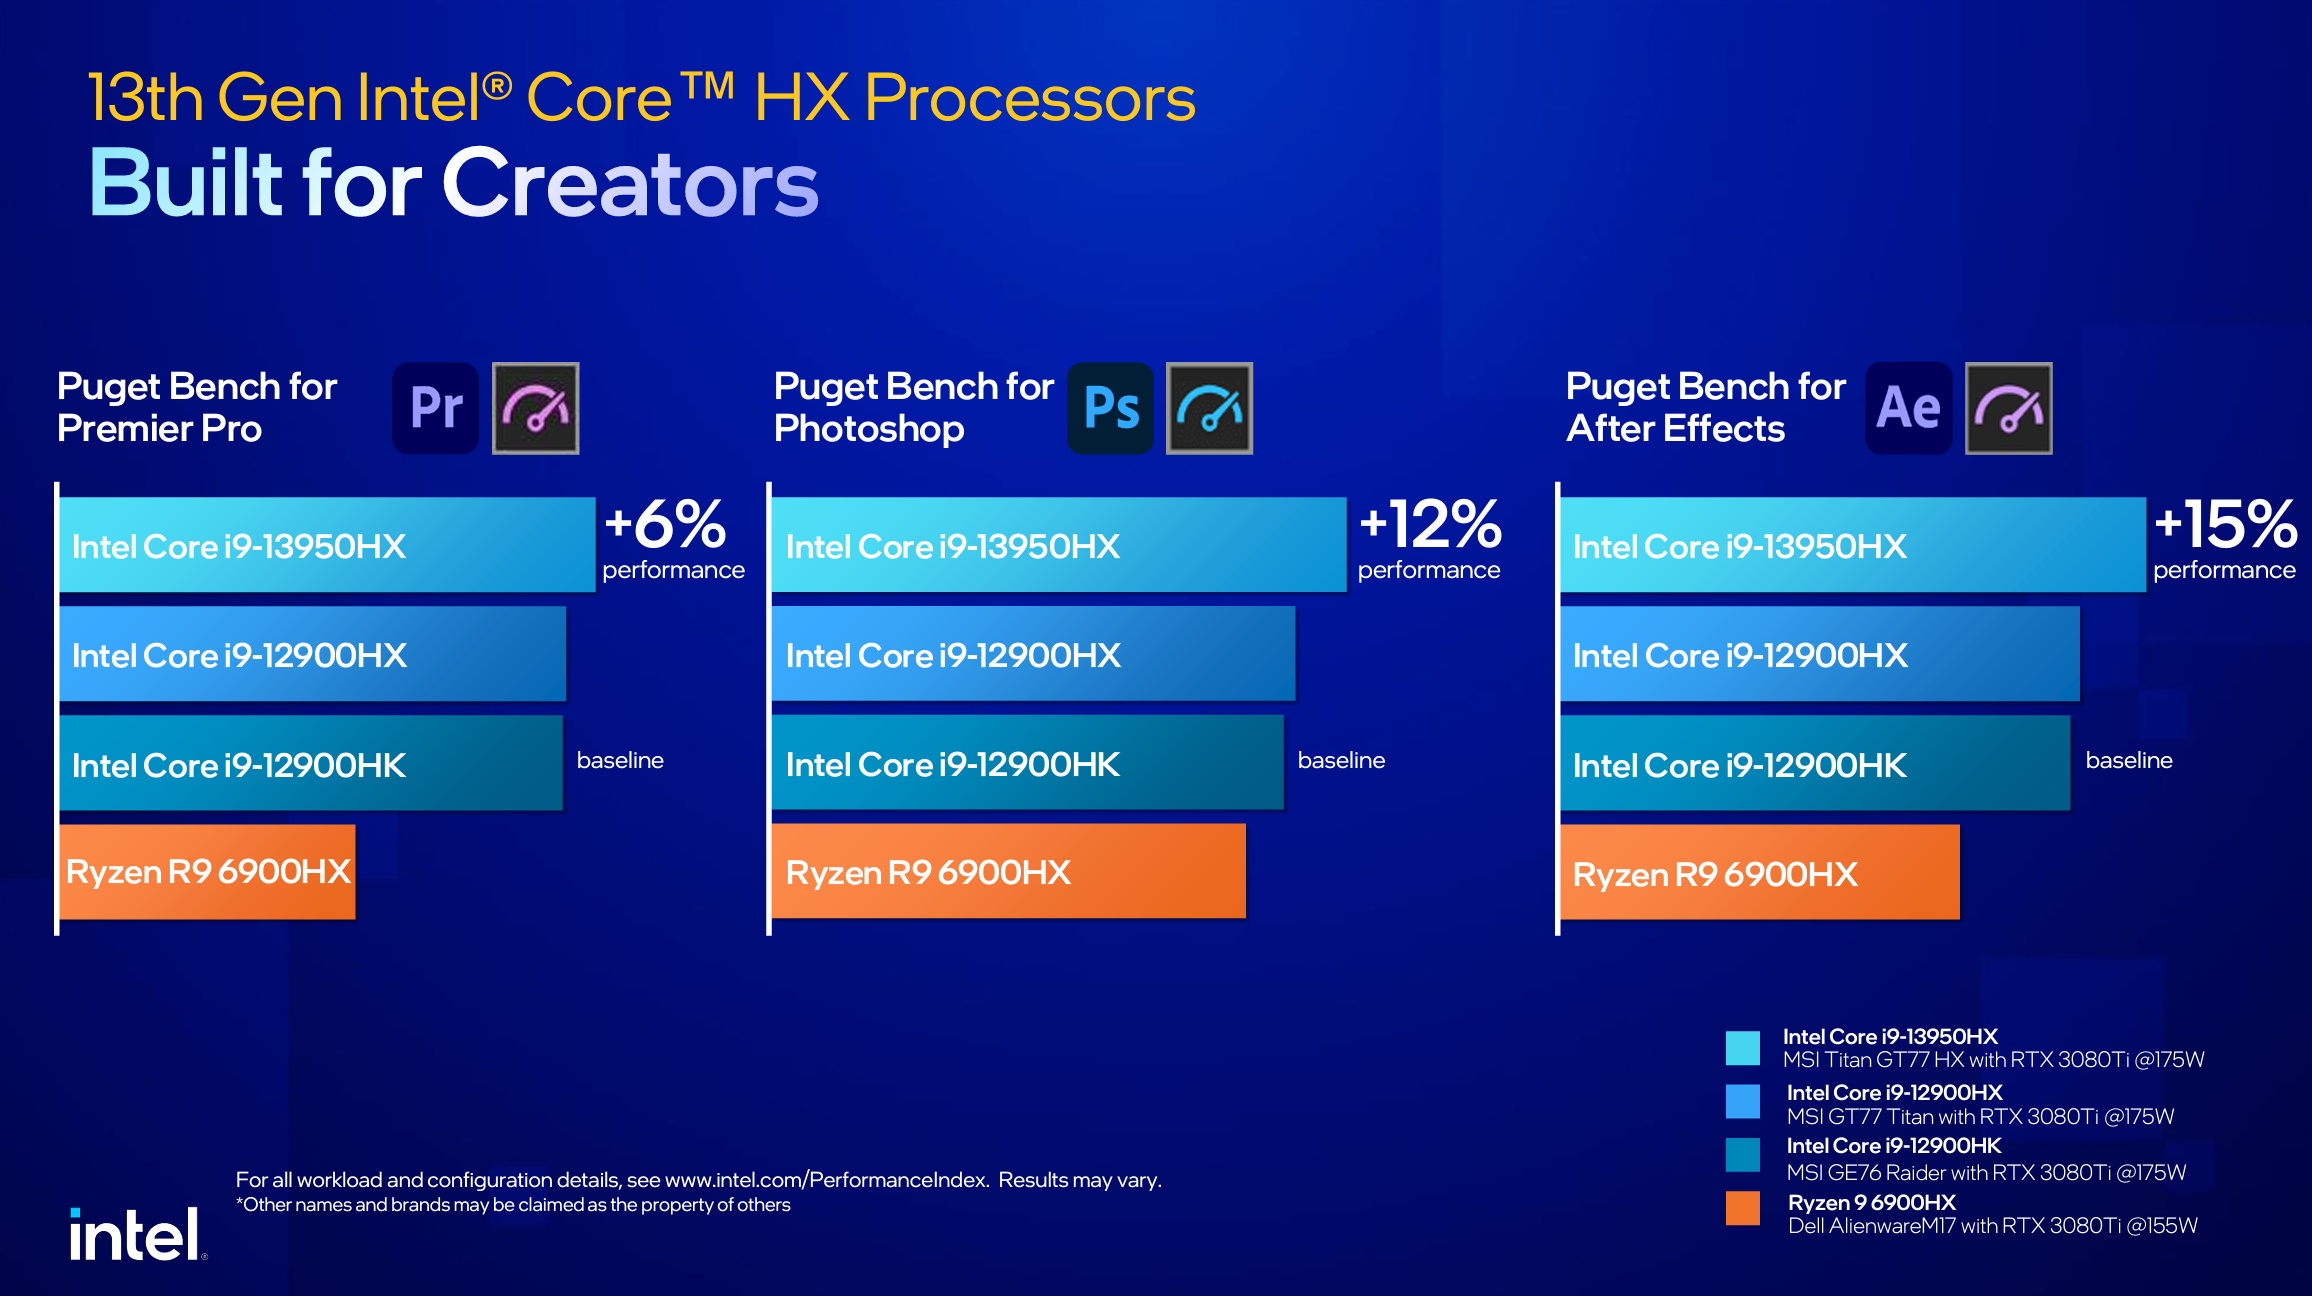 Diapositive sur les performances du processeur Intel 13e génération Core HX.